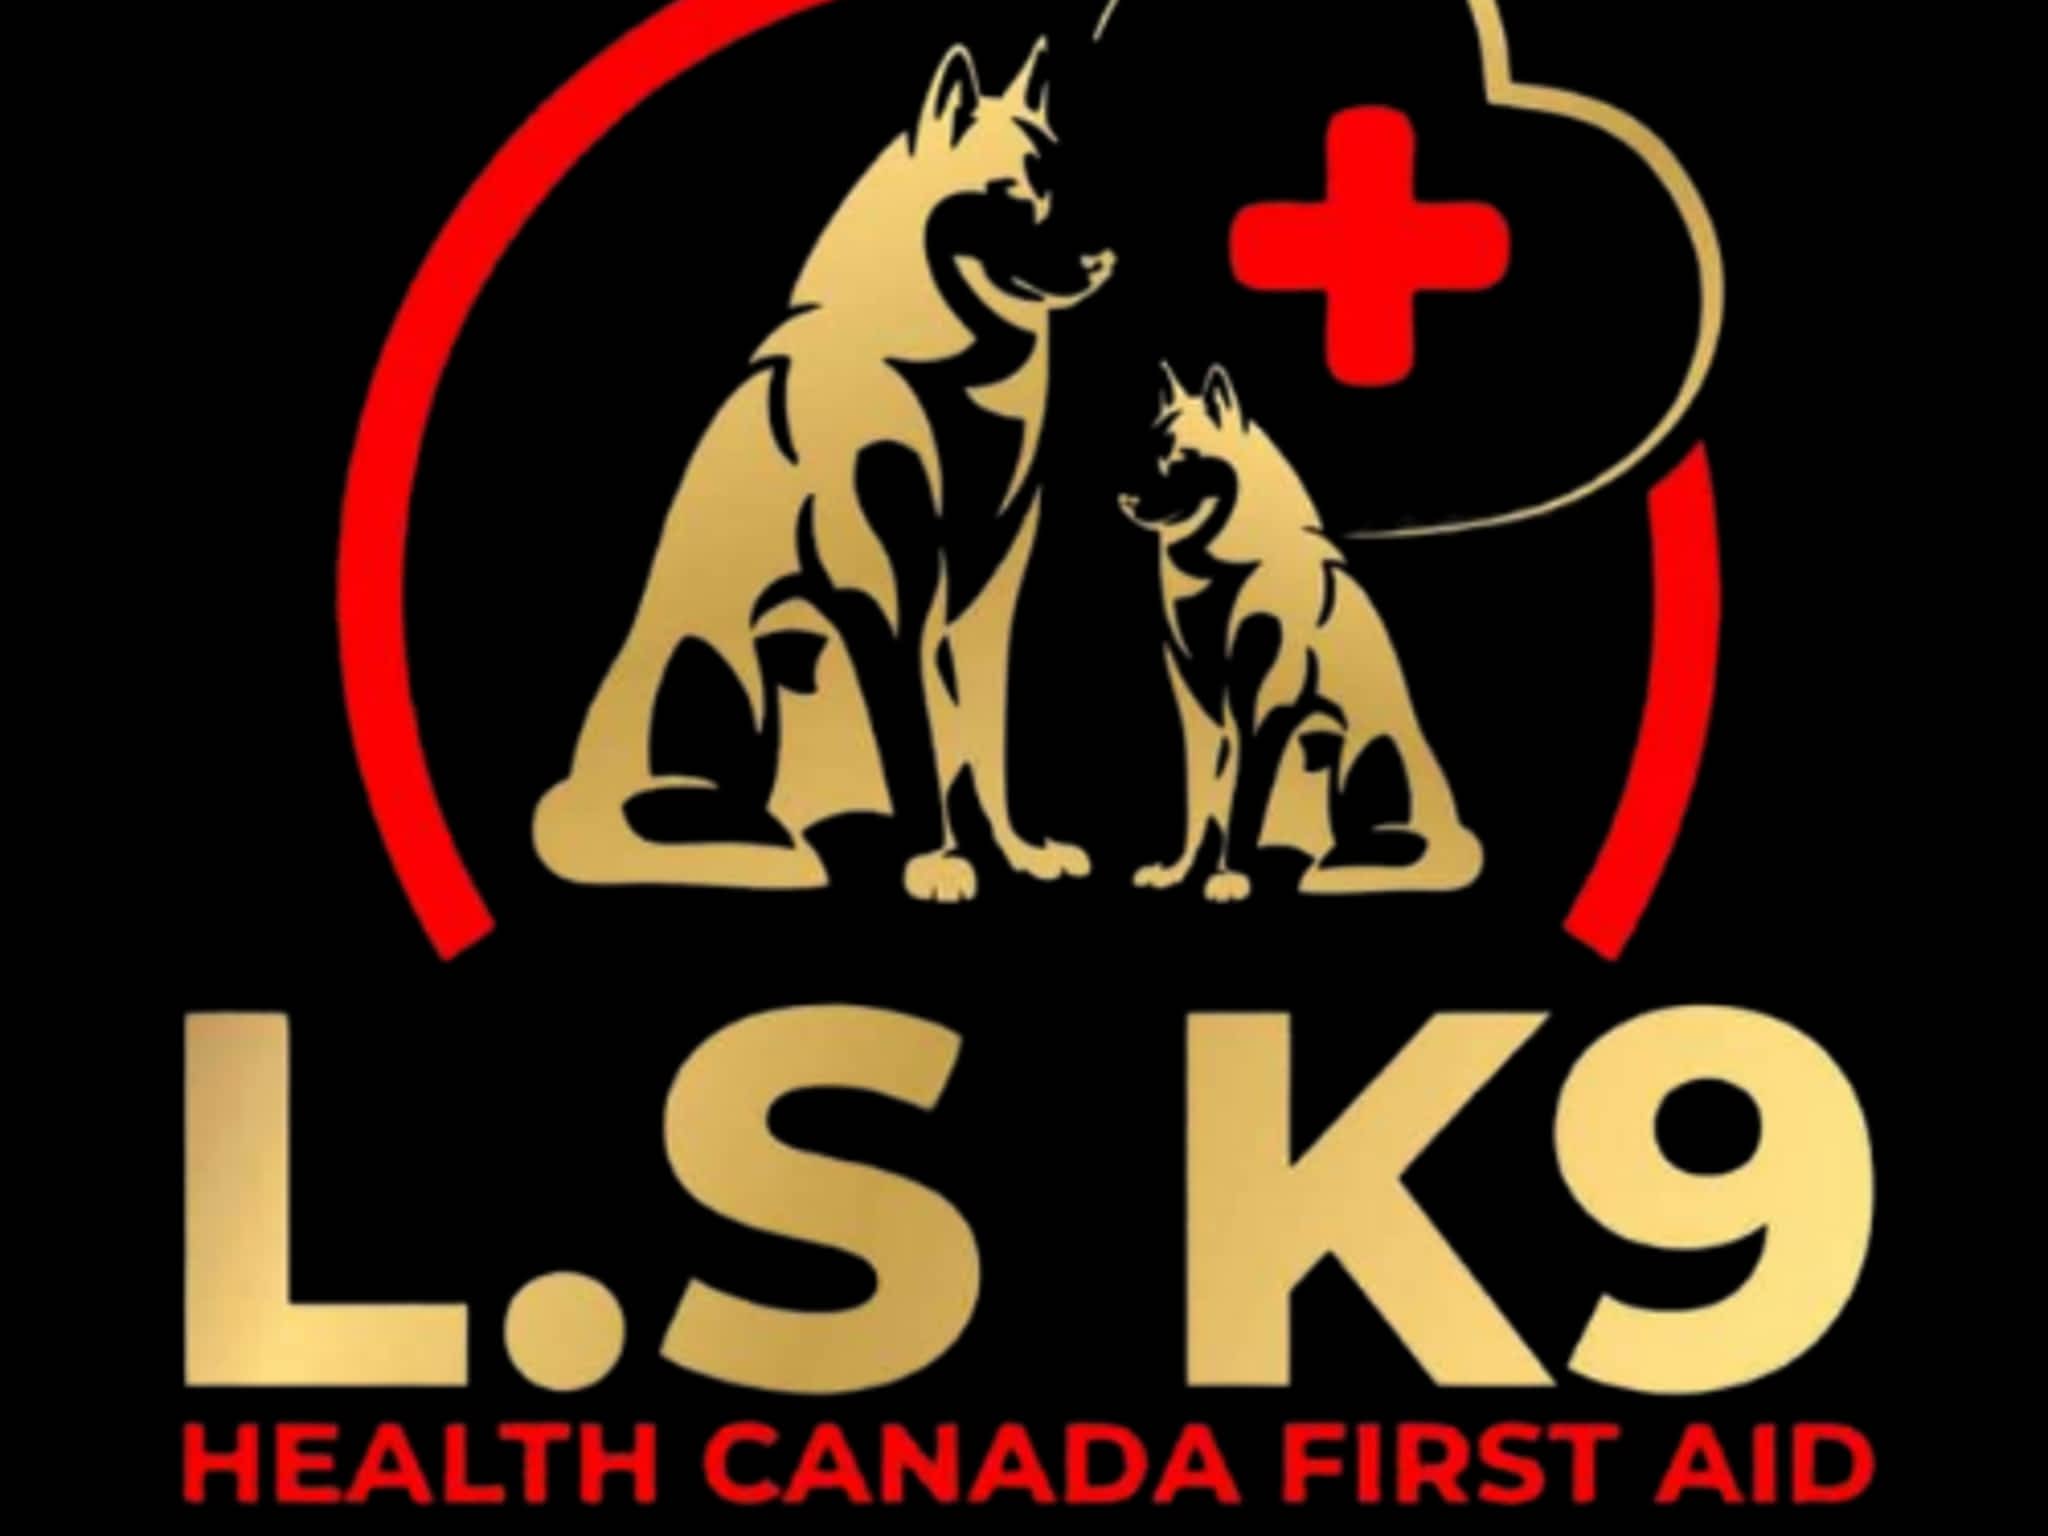 photo L.S. K9 Health Canada First Aid